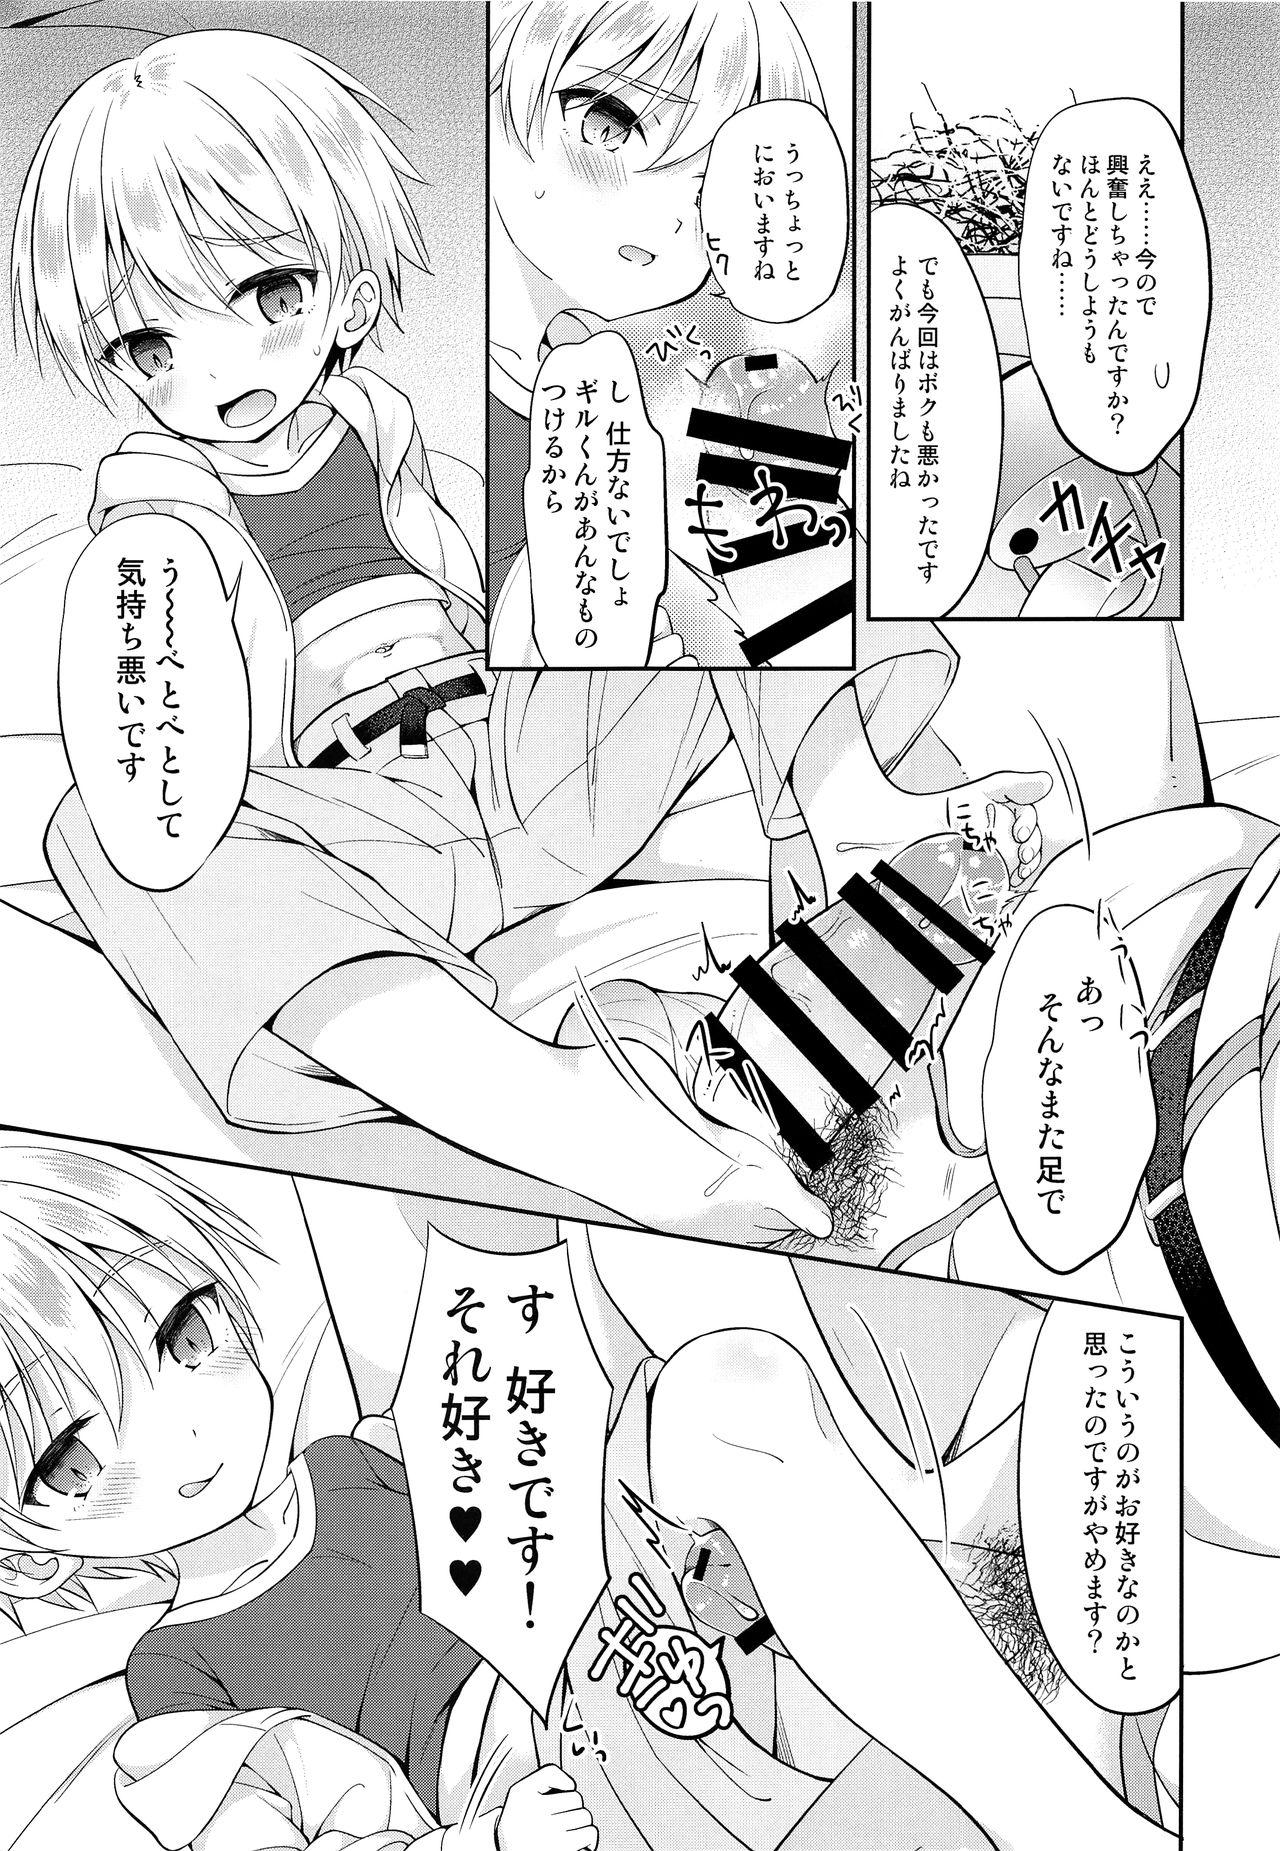 3some Gil-kun You no Shitsuke no Jikan - Fate grand order Pregnant - Page 6